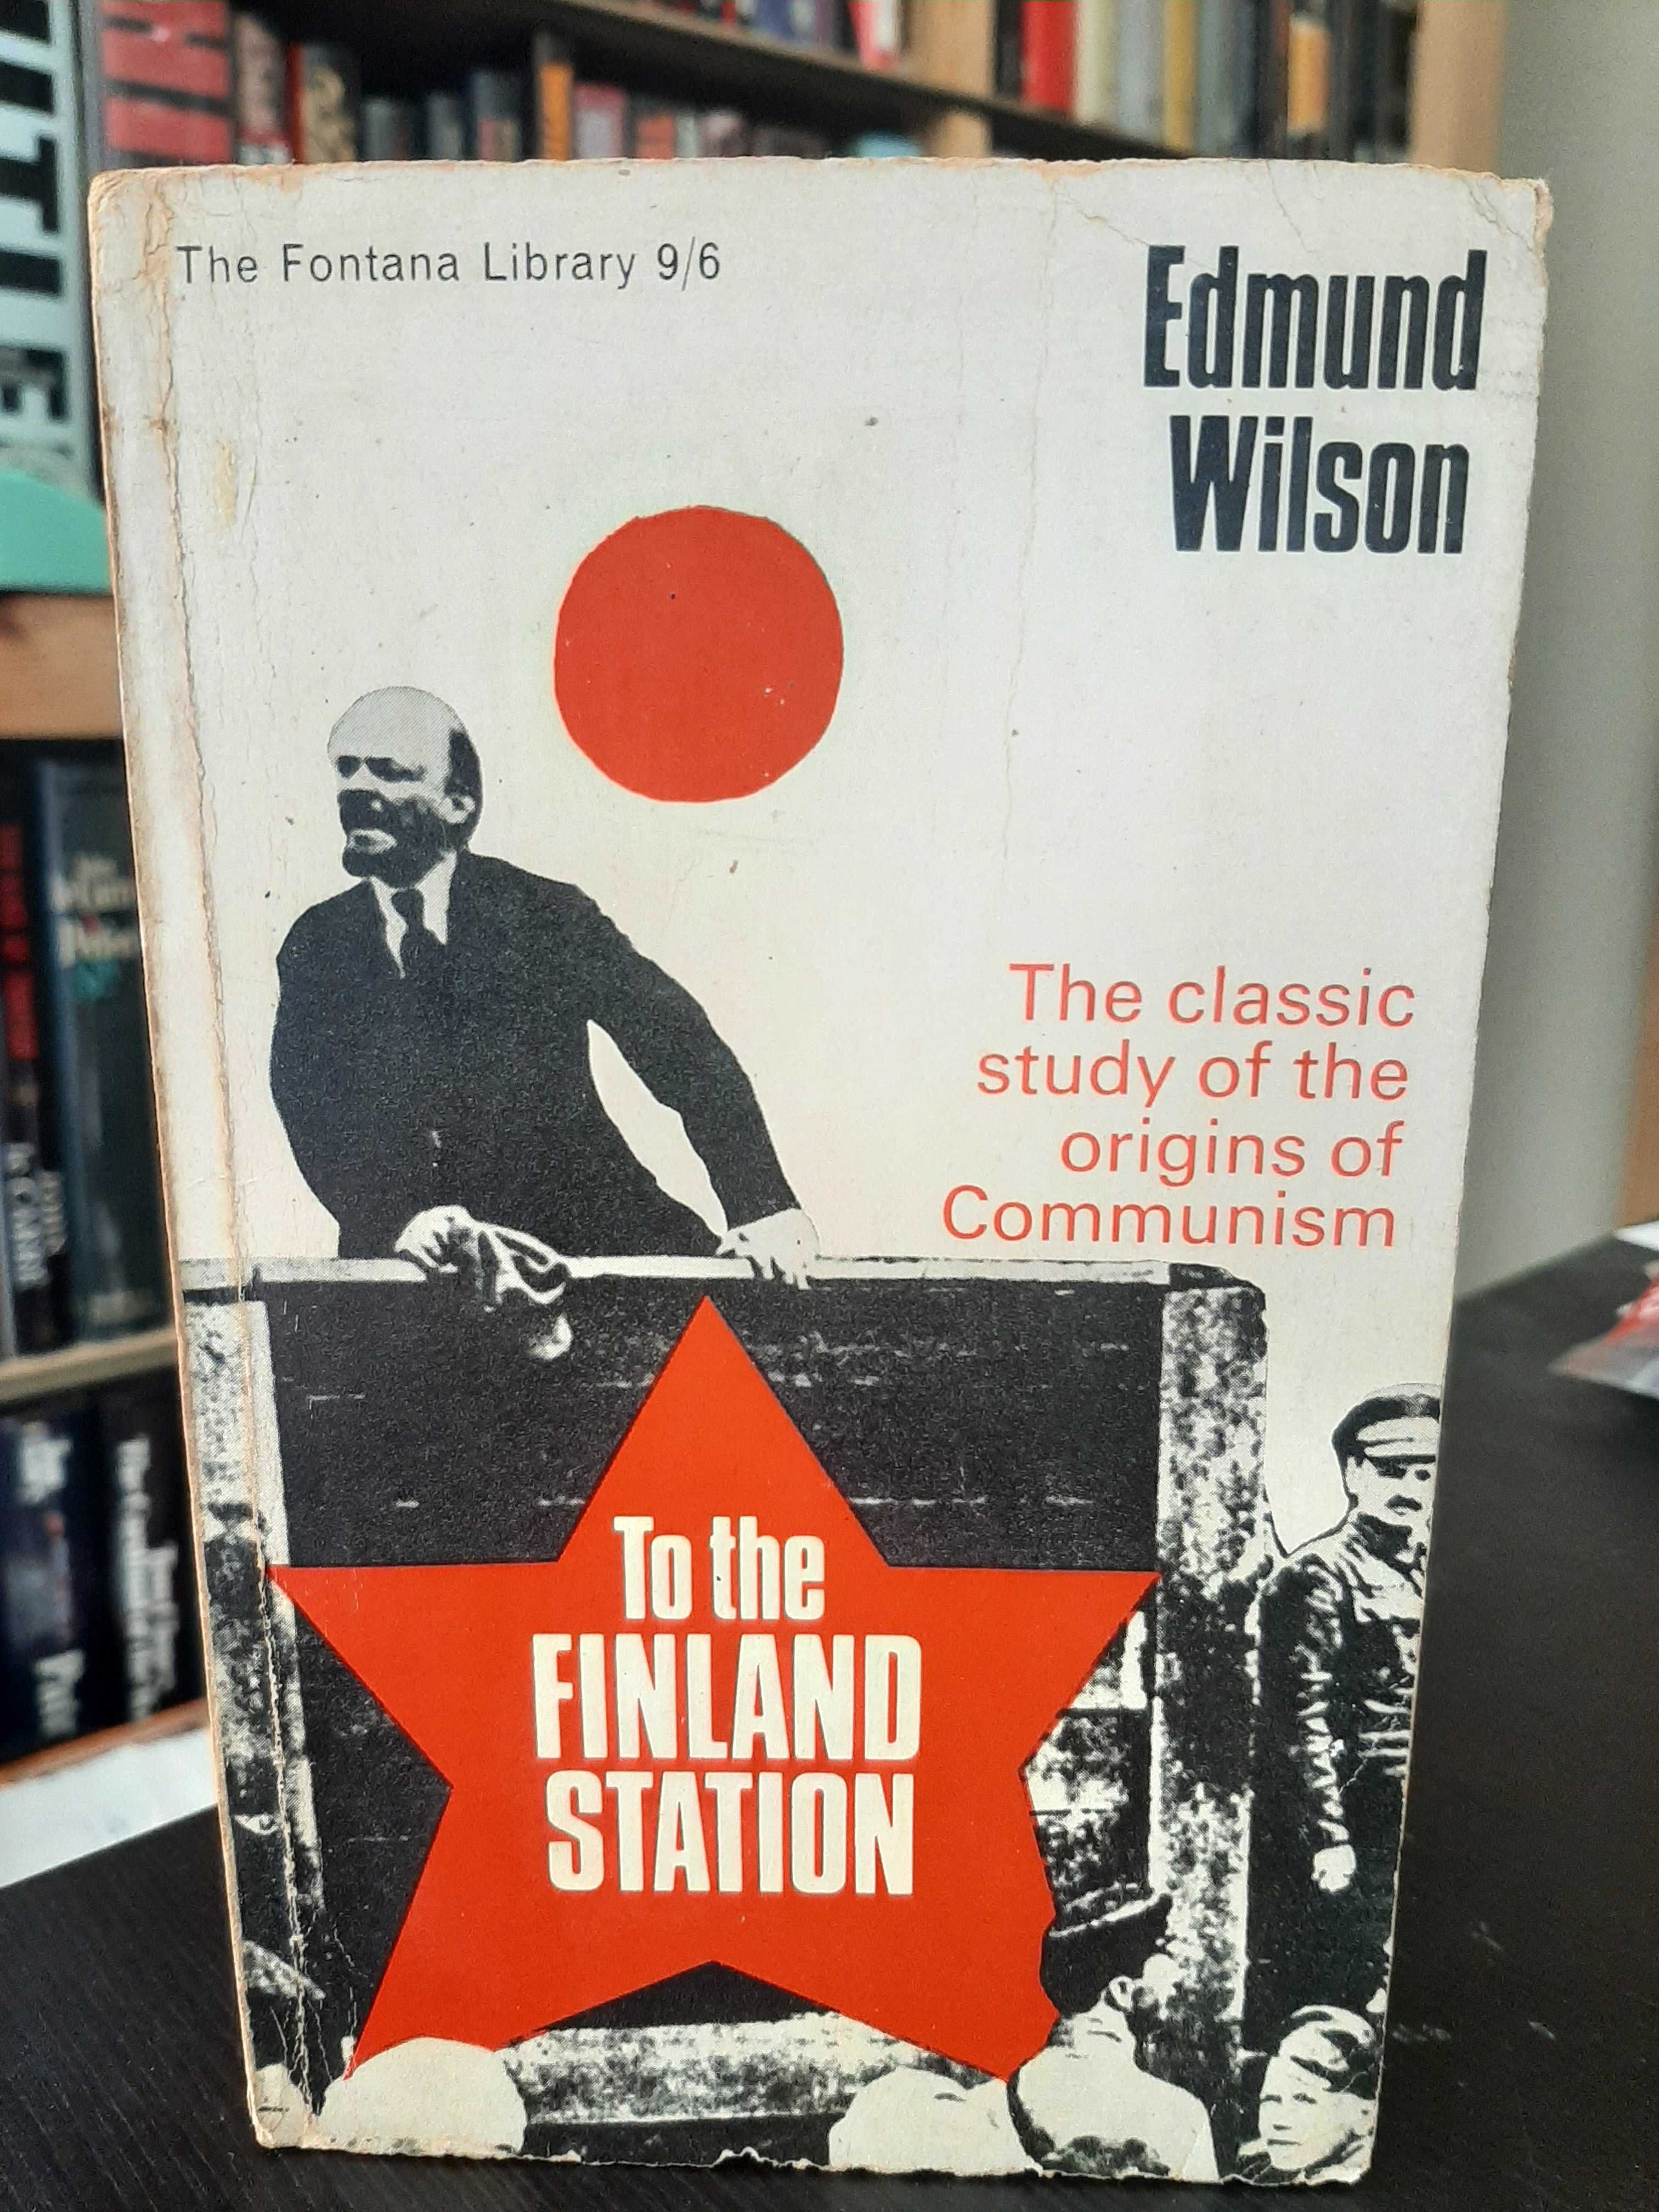 Edmund Wilson – To the Finland Station: Origins of Communism